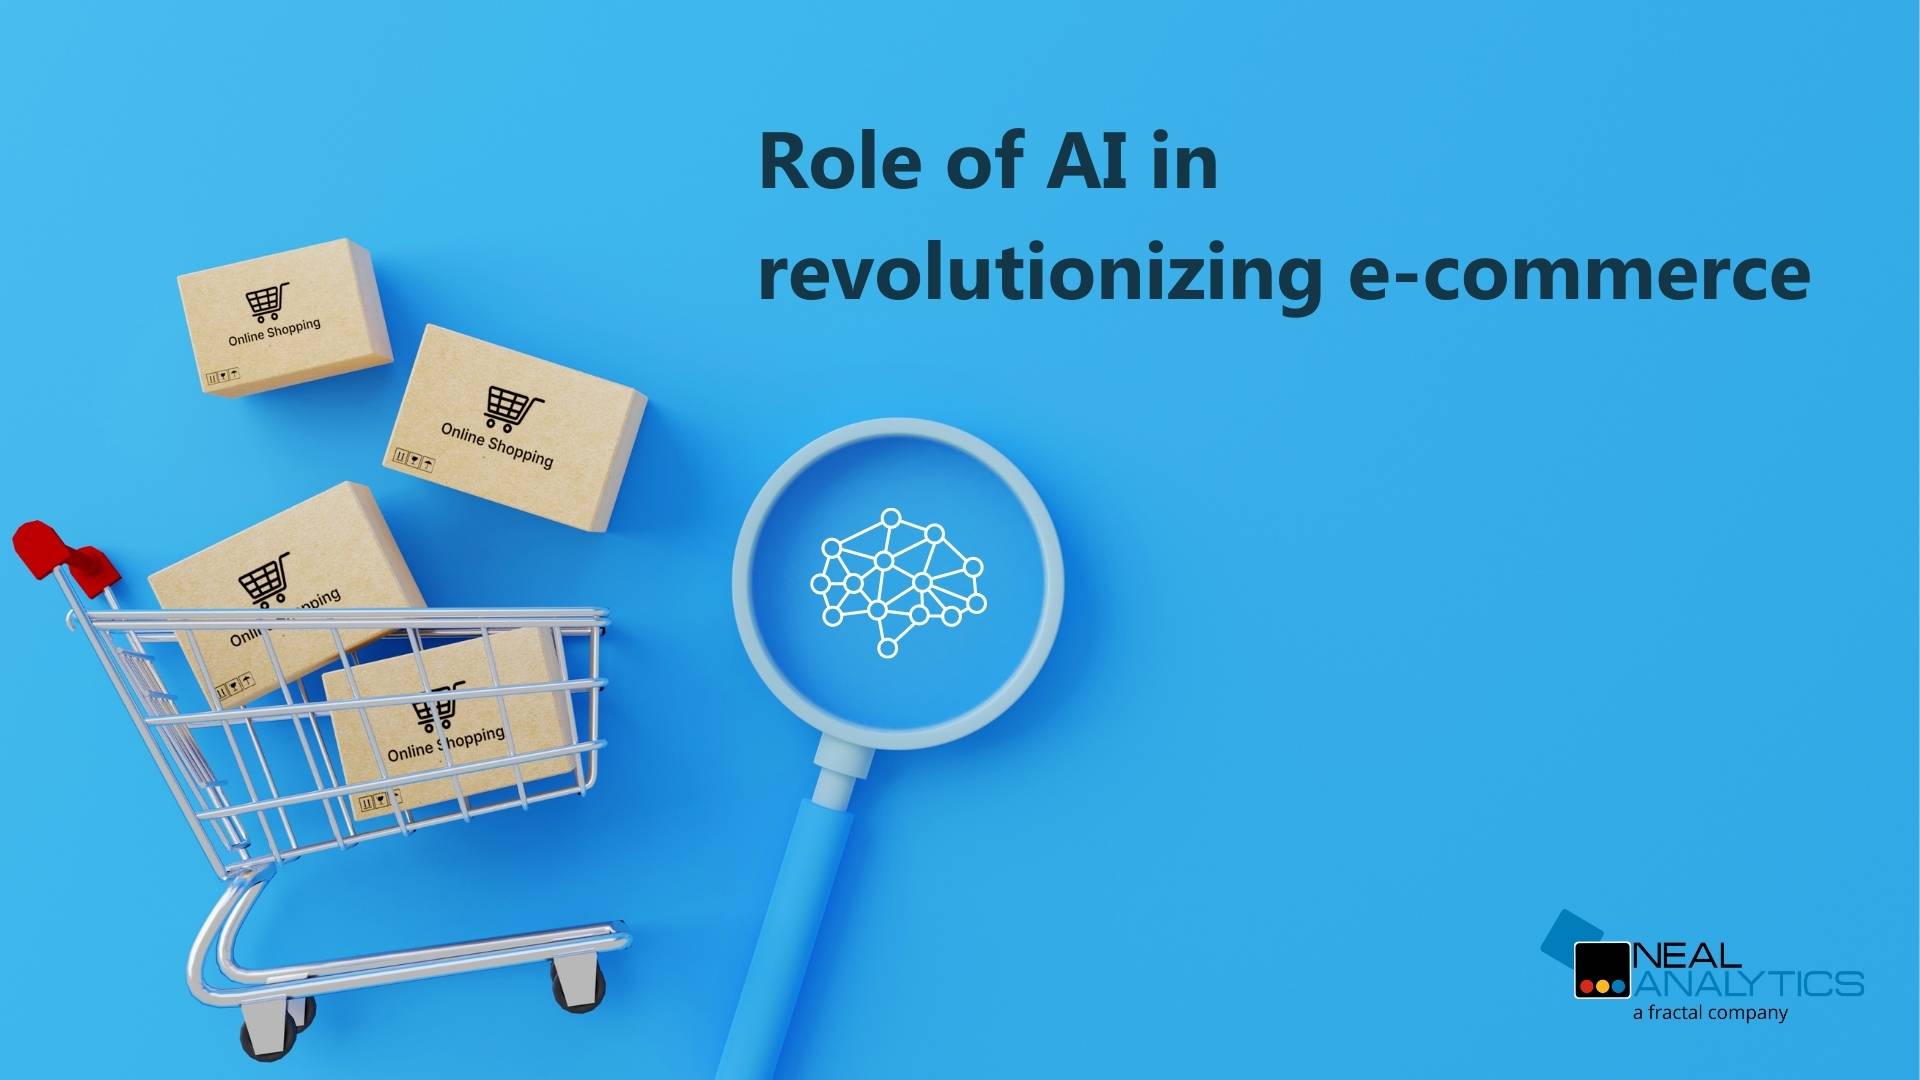 Role of AI in e-commerce